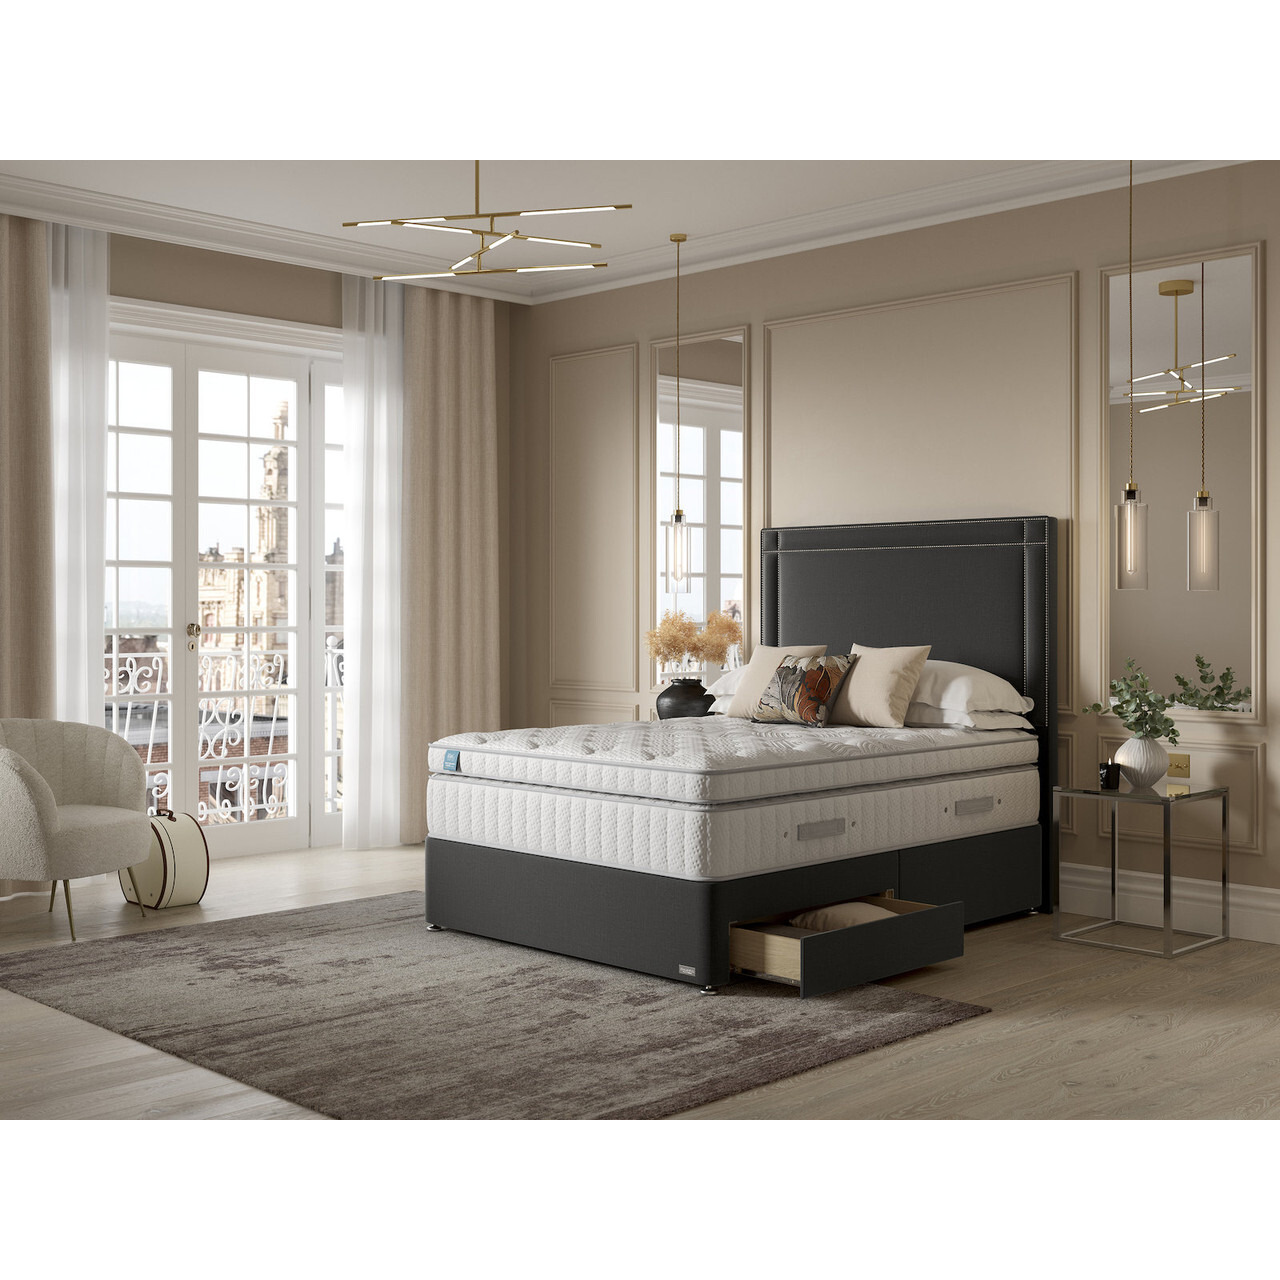 iGel Advance 4400i Plush Top Divan Bed Set On Castors - image 1